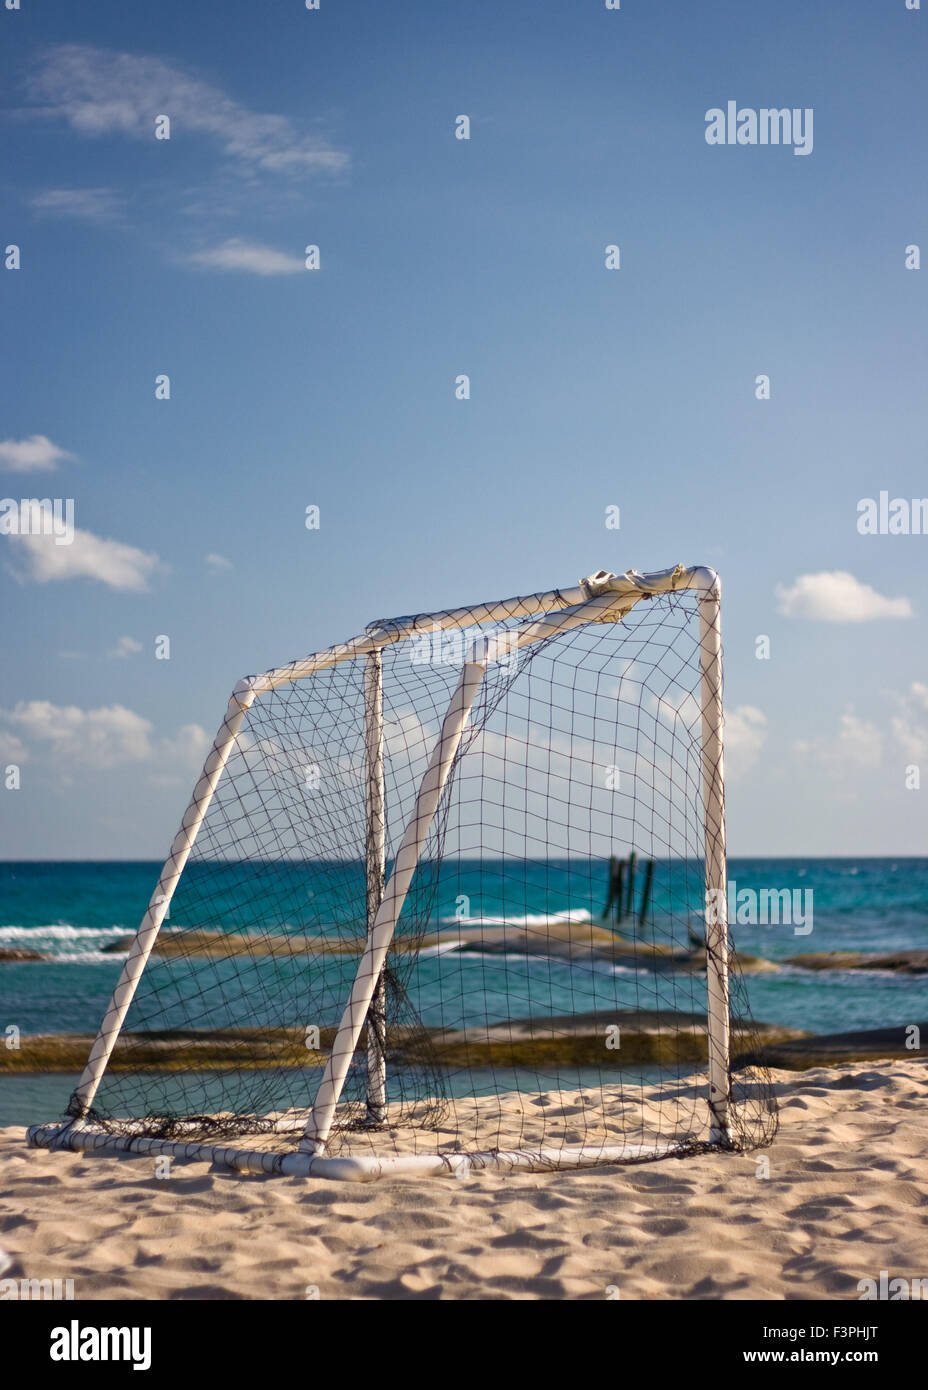 Fußball Ziel am Strand gegen den blauen Himmel und Meer Stockfoto